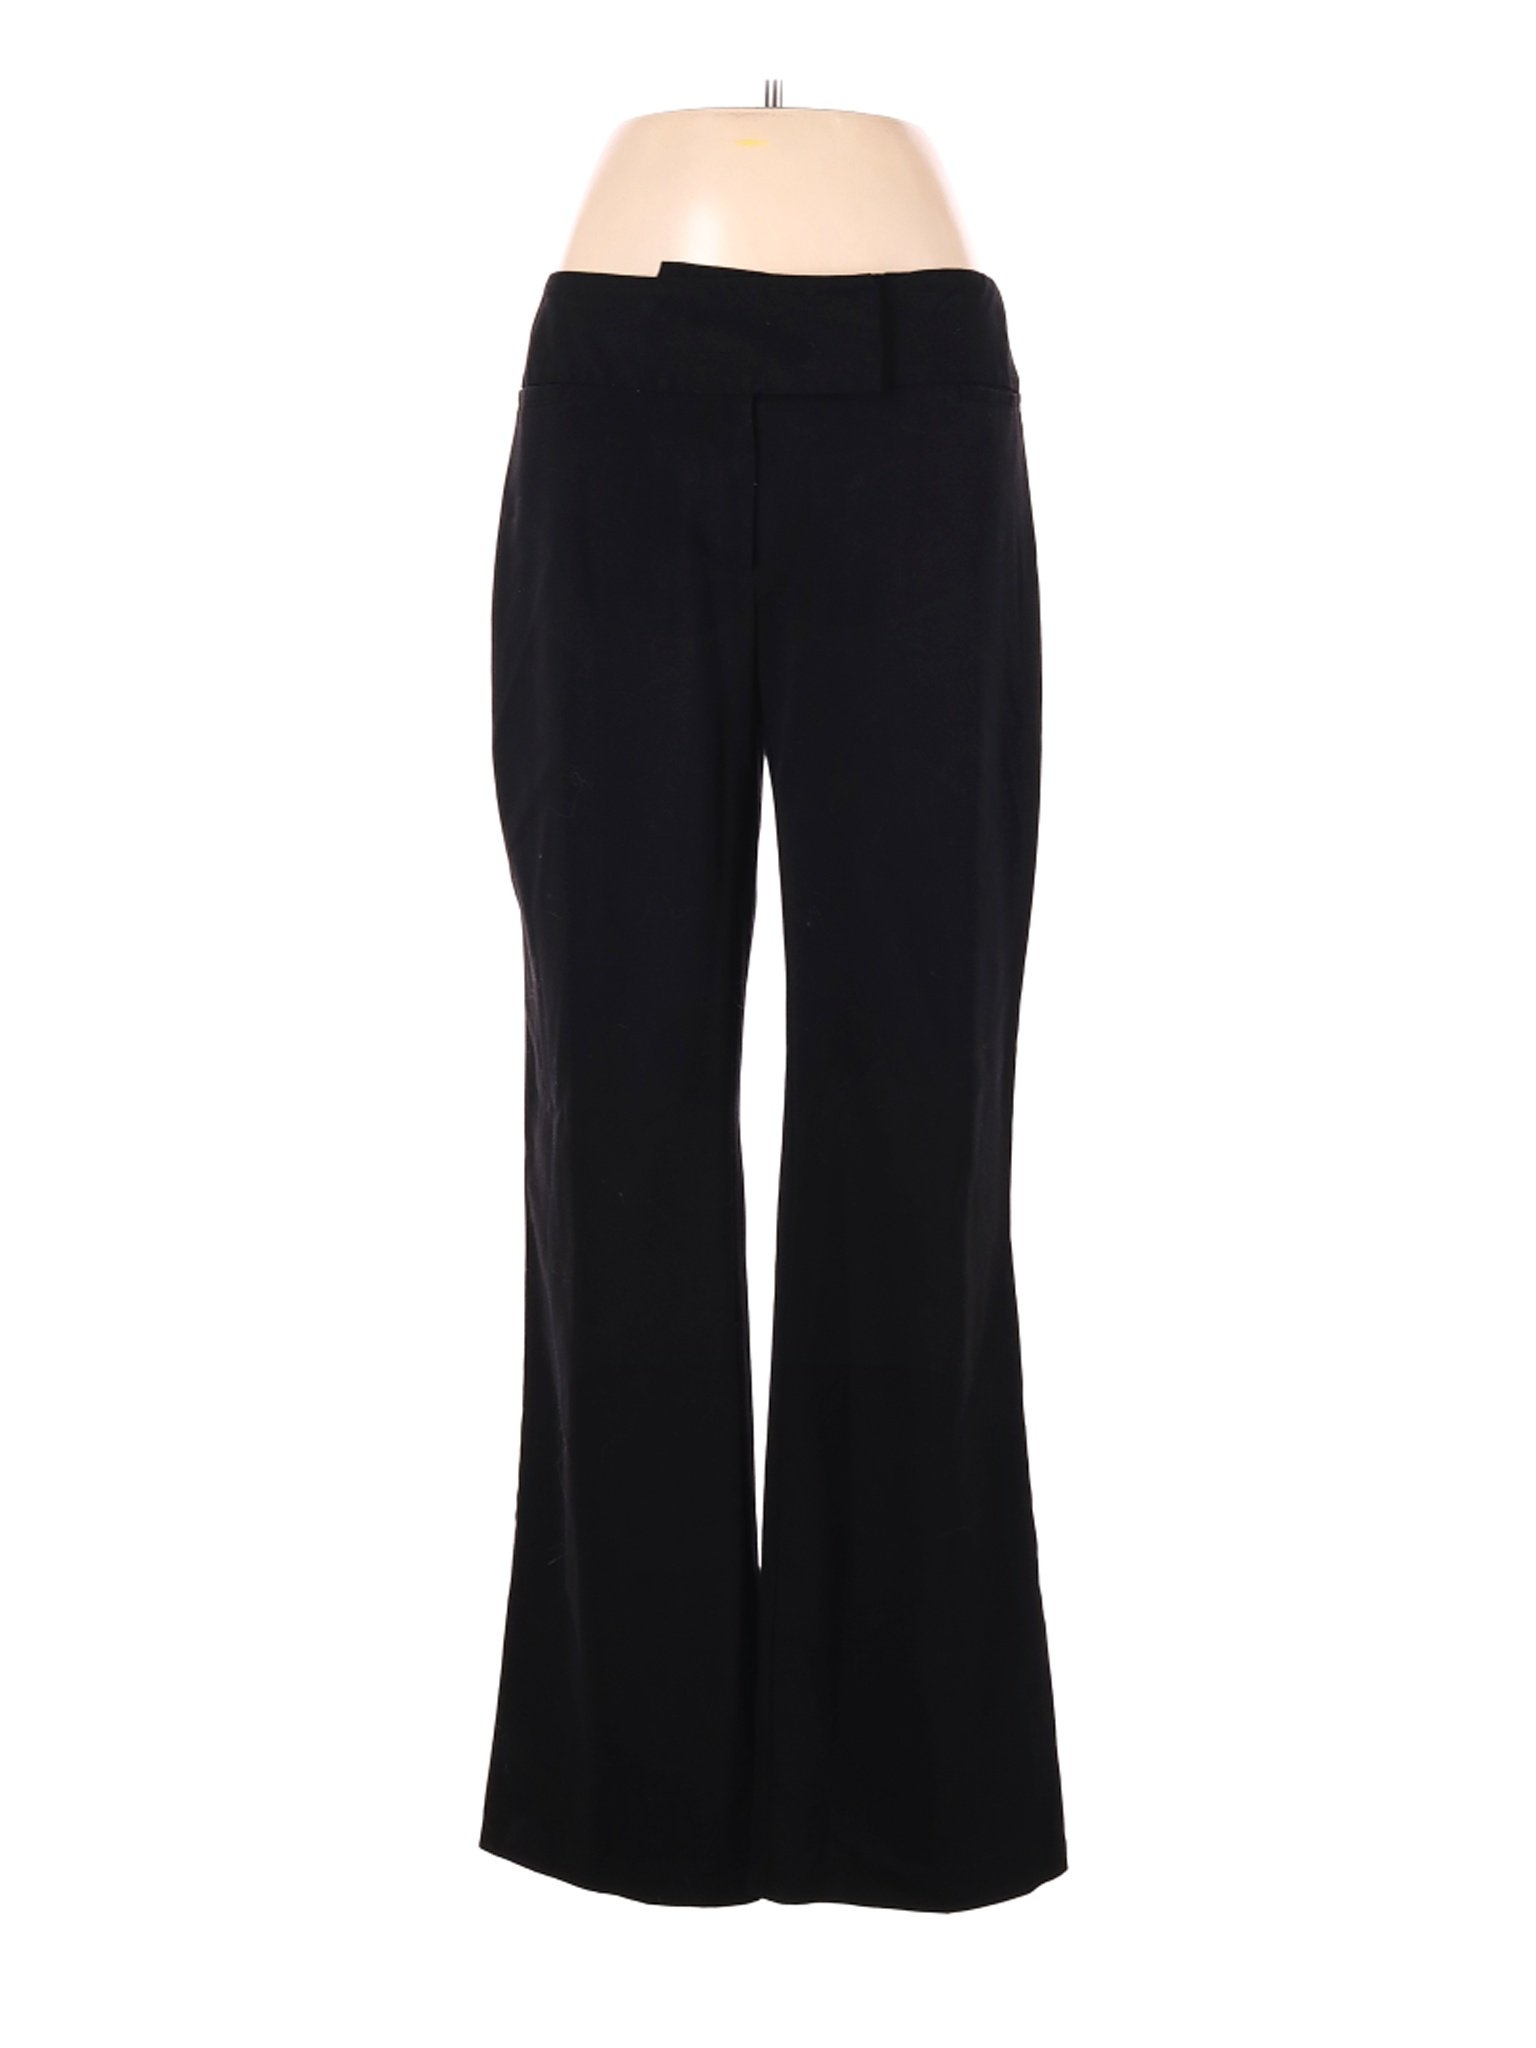 NYCC Women Black Dress Pants 8 | eBay